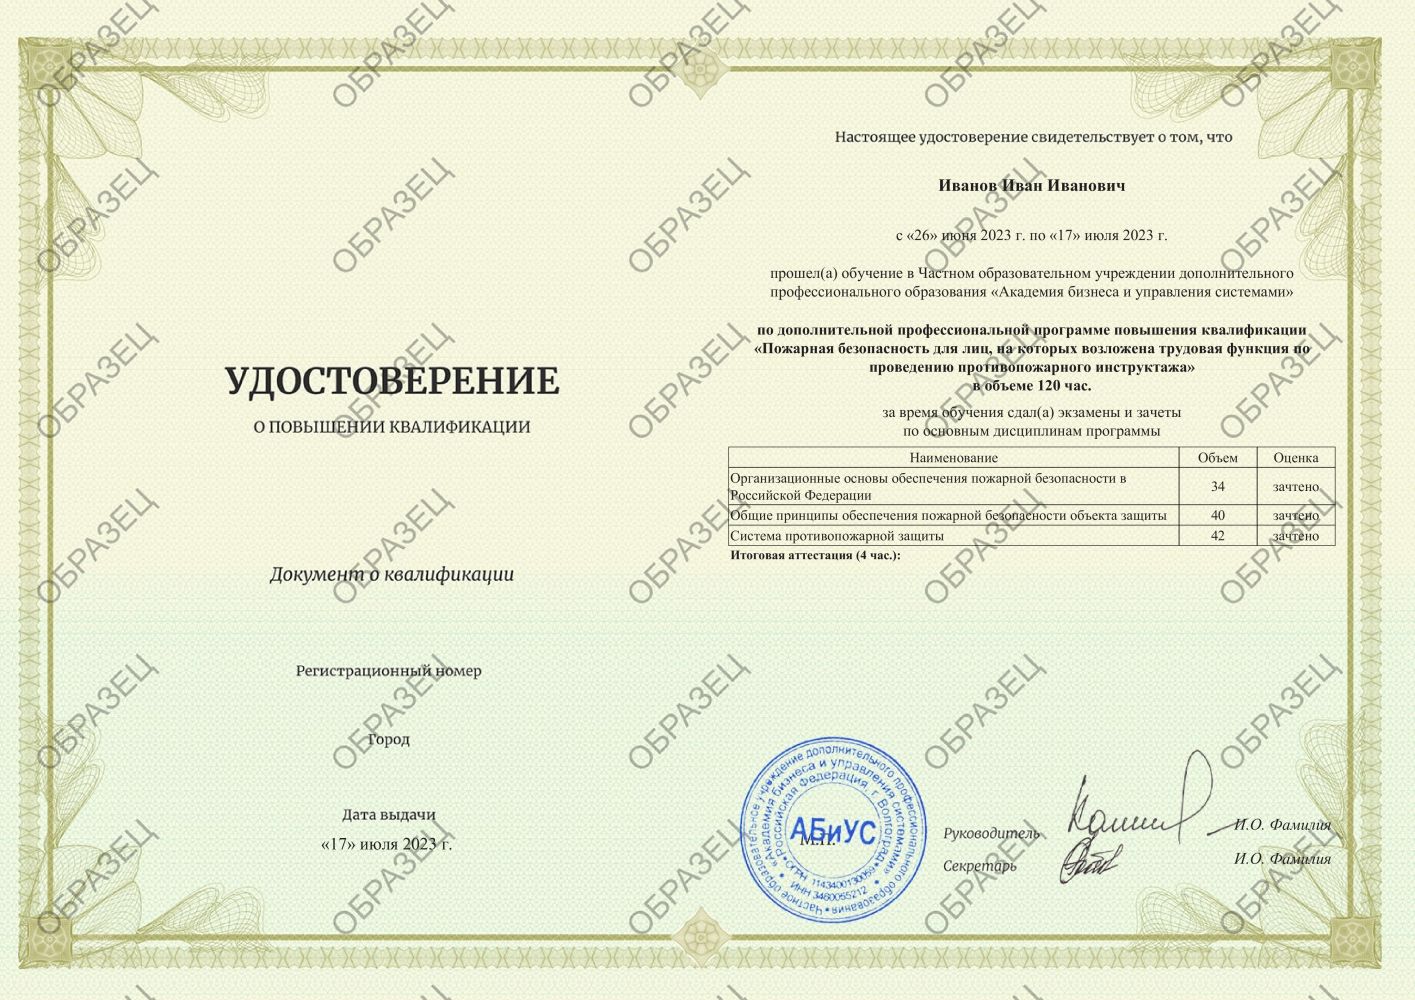 Удостоверение Пожарная безопасность для лиц, на которых возложена трудовая функция по проведению противопожарного инструктажа 120 часов 4688 руб.